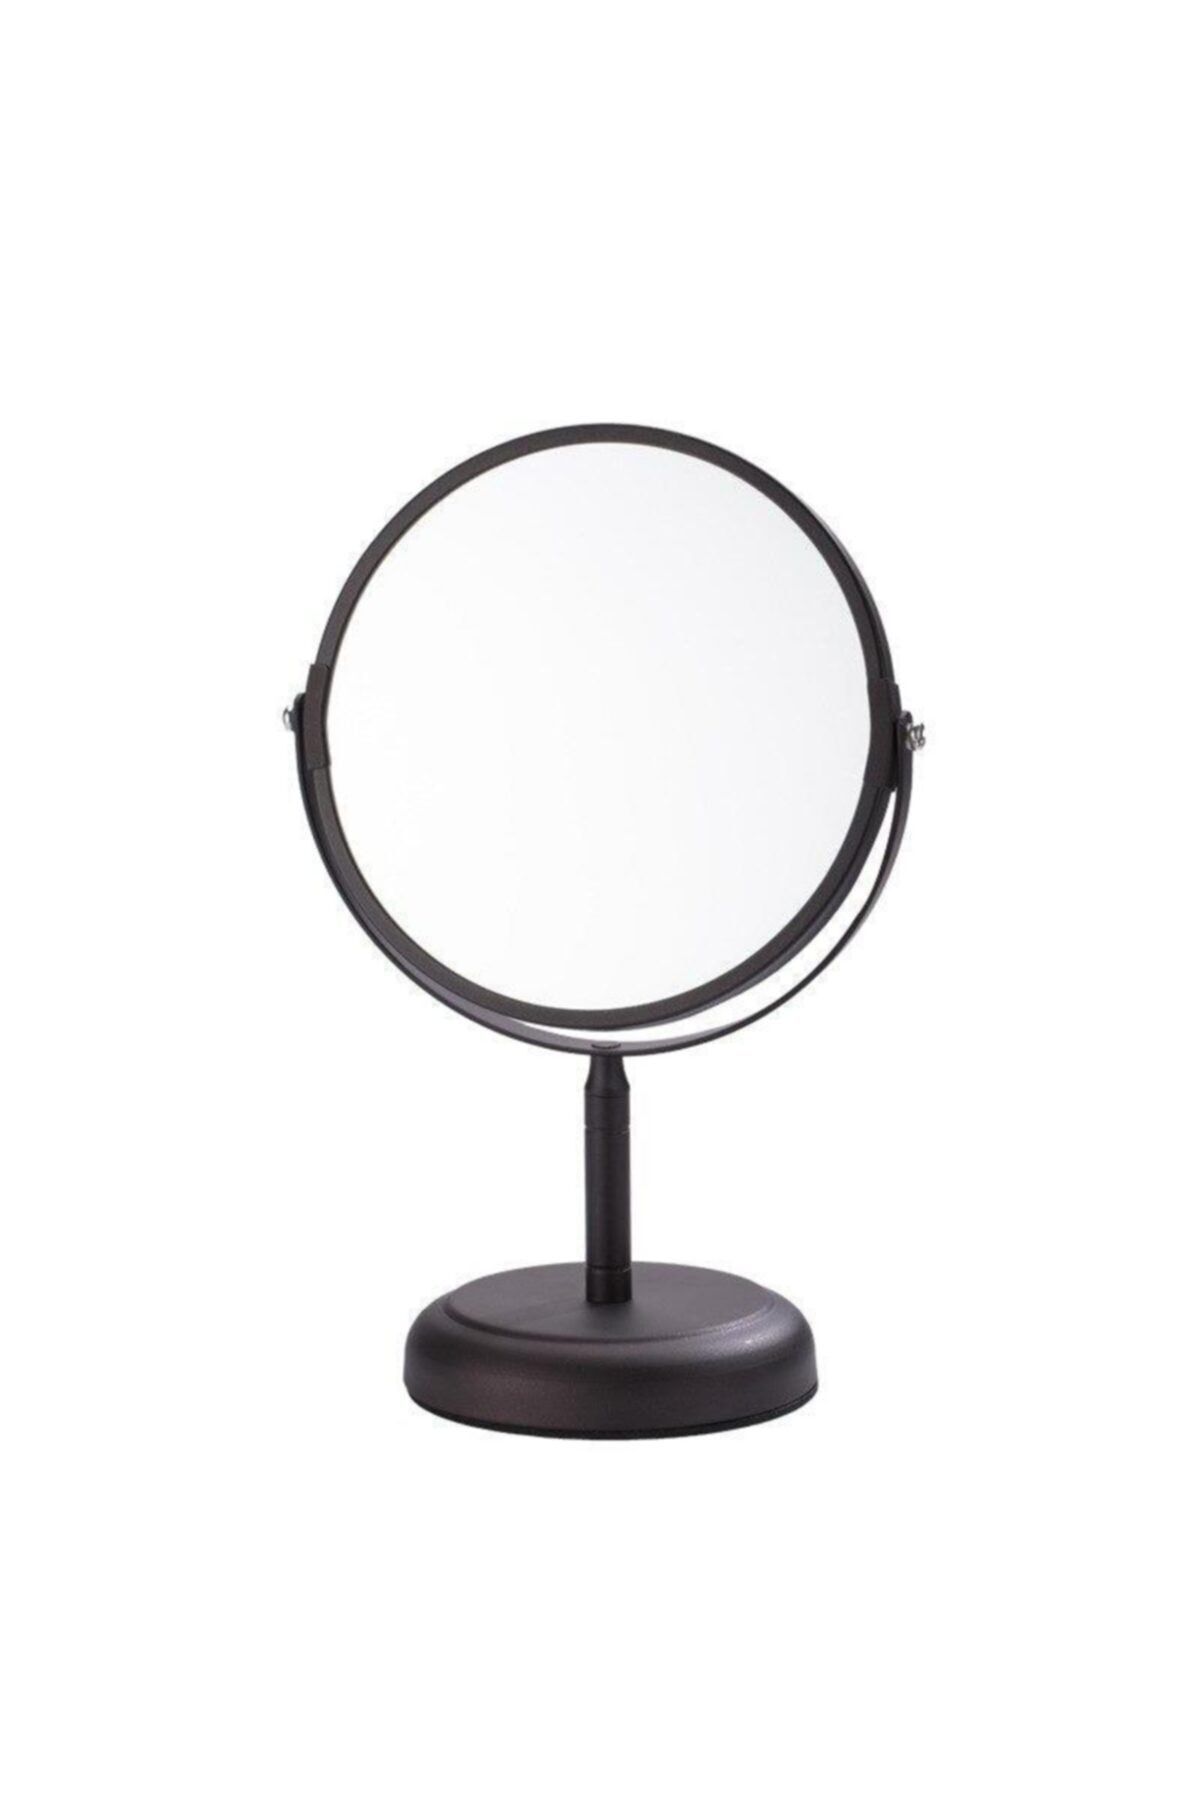 Gesh 63917 5x Büyüteçli Çift Taraflı Ayaklı Ayna Masaüstü Makyaj Aynası Metal Şık Tasarım